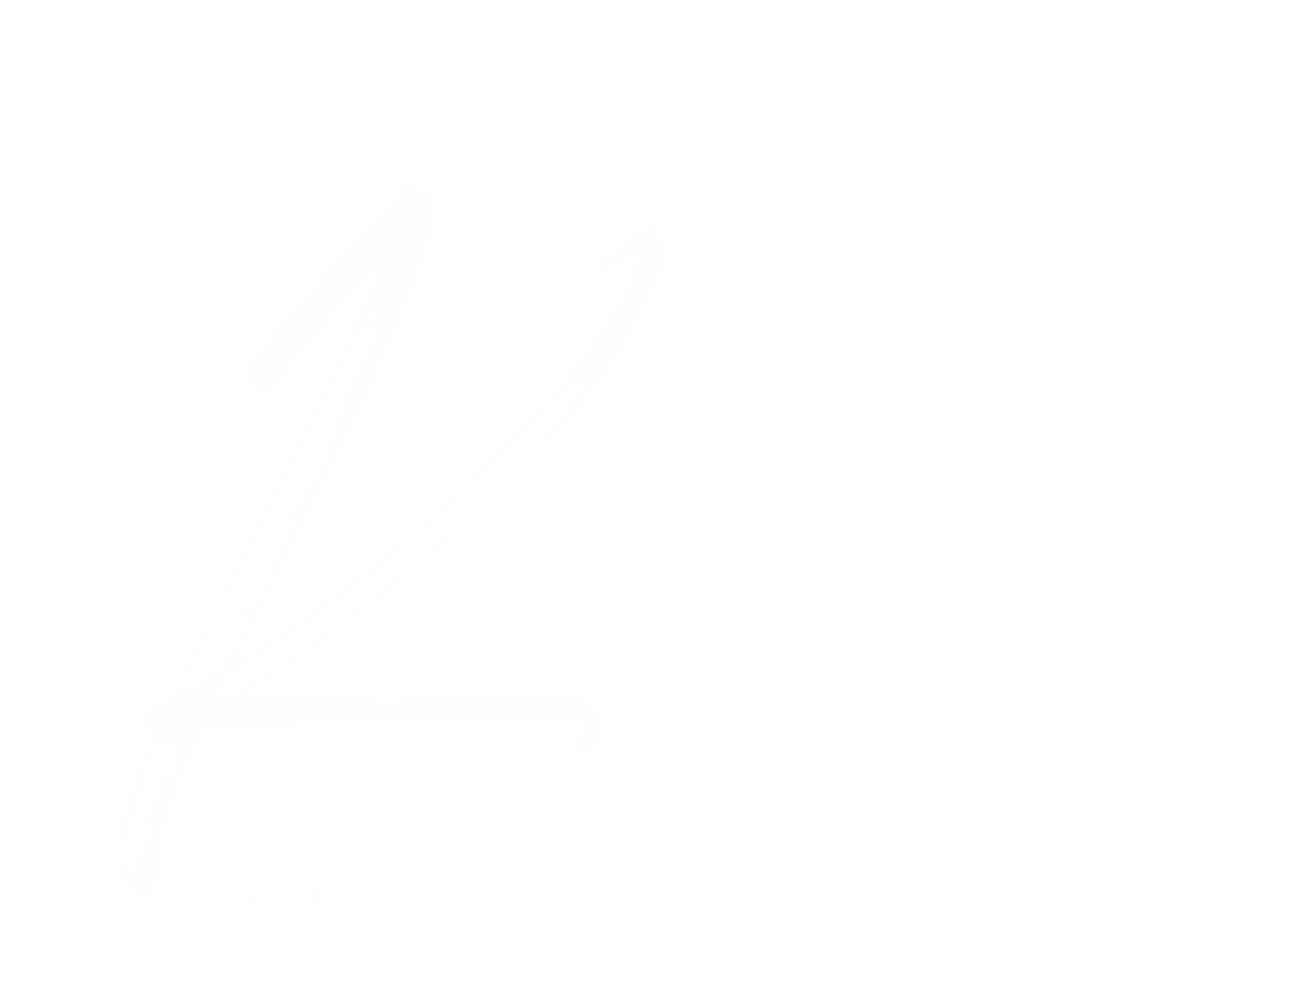 Kevin Guilhem